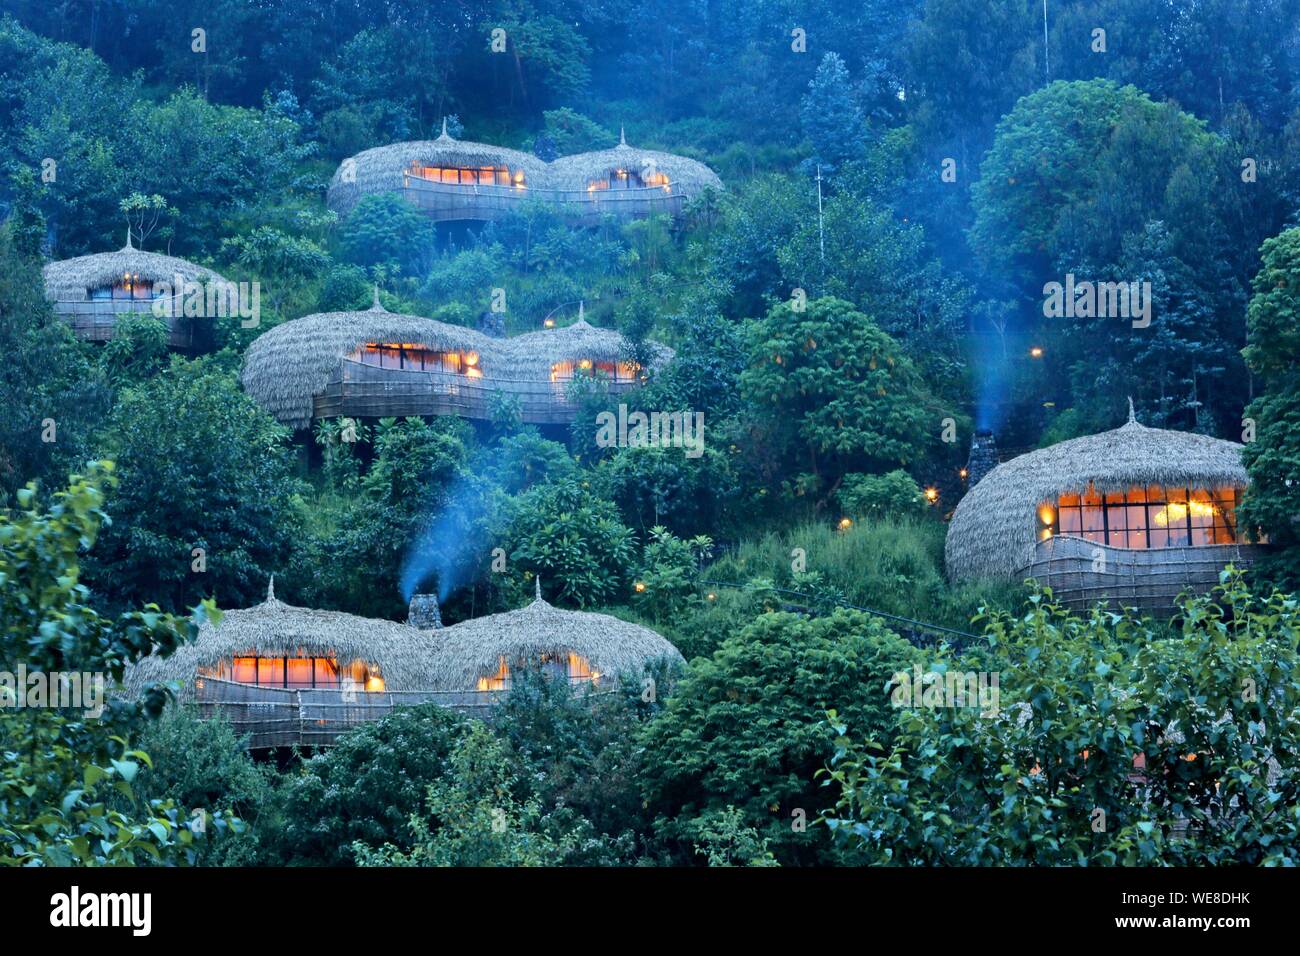 Ruanda Volcanoes National Park, strohgedeckten Villen der Wildreness Bisote Lodge Safaris Hotel Gruppe, die sich aus einem Hügel bedeckt mit Vegetation Stockfoto